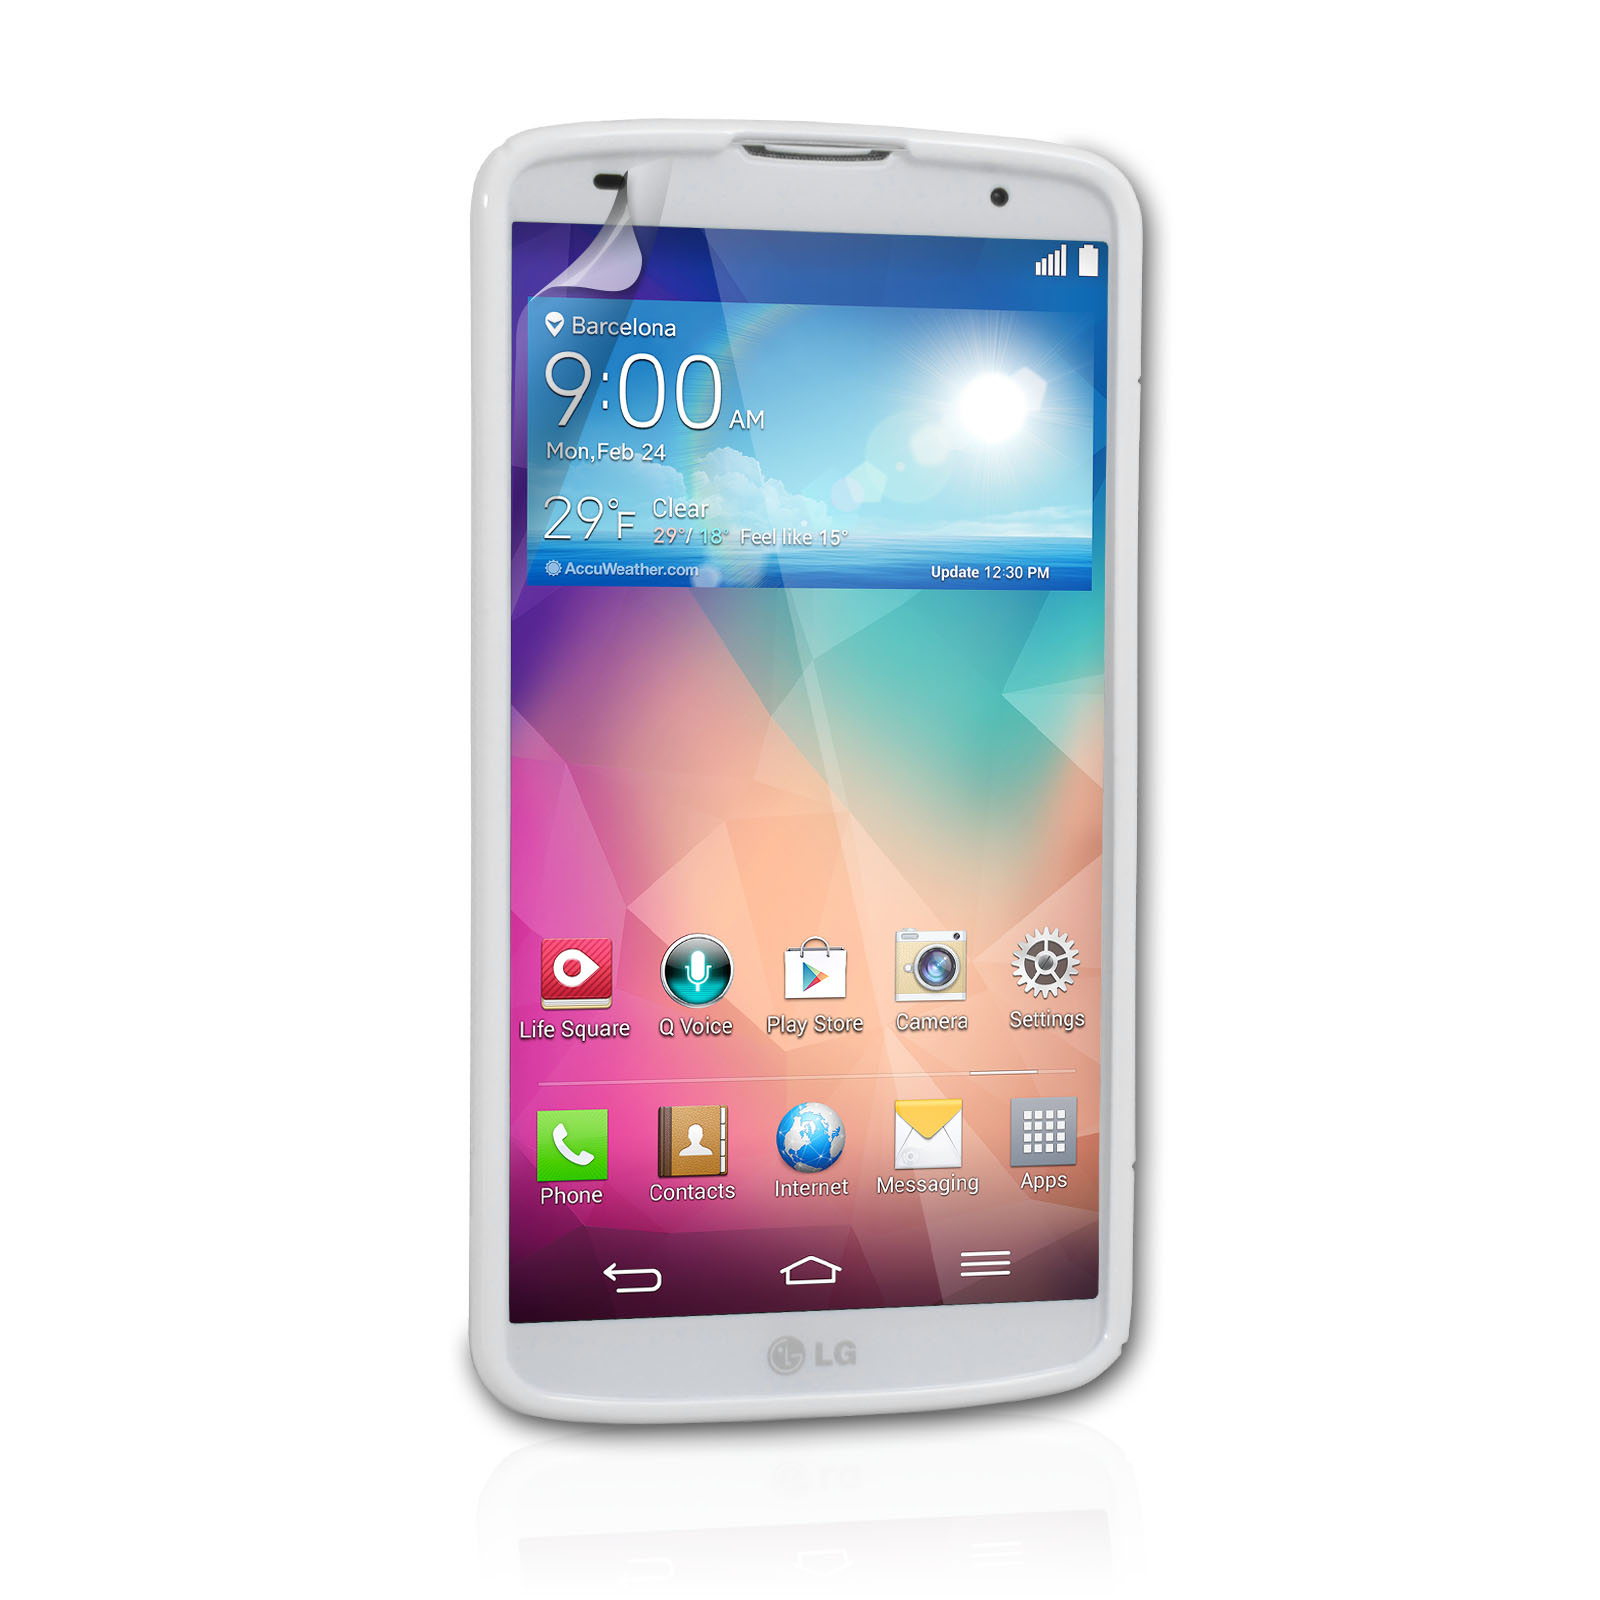 Caseflex LG G Pro 2 Silicone Gel S-Line Case - White